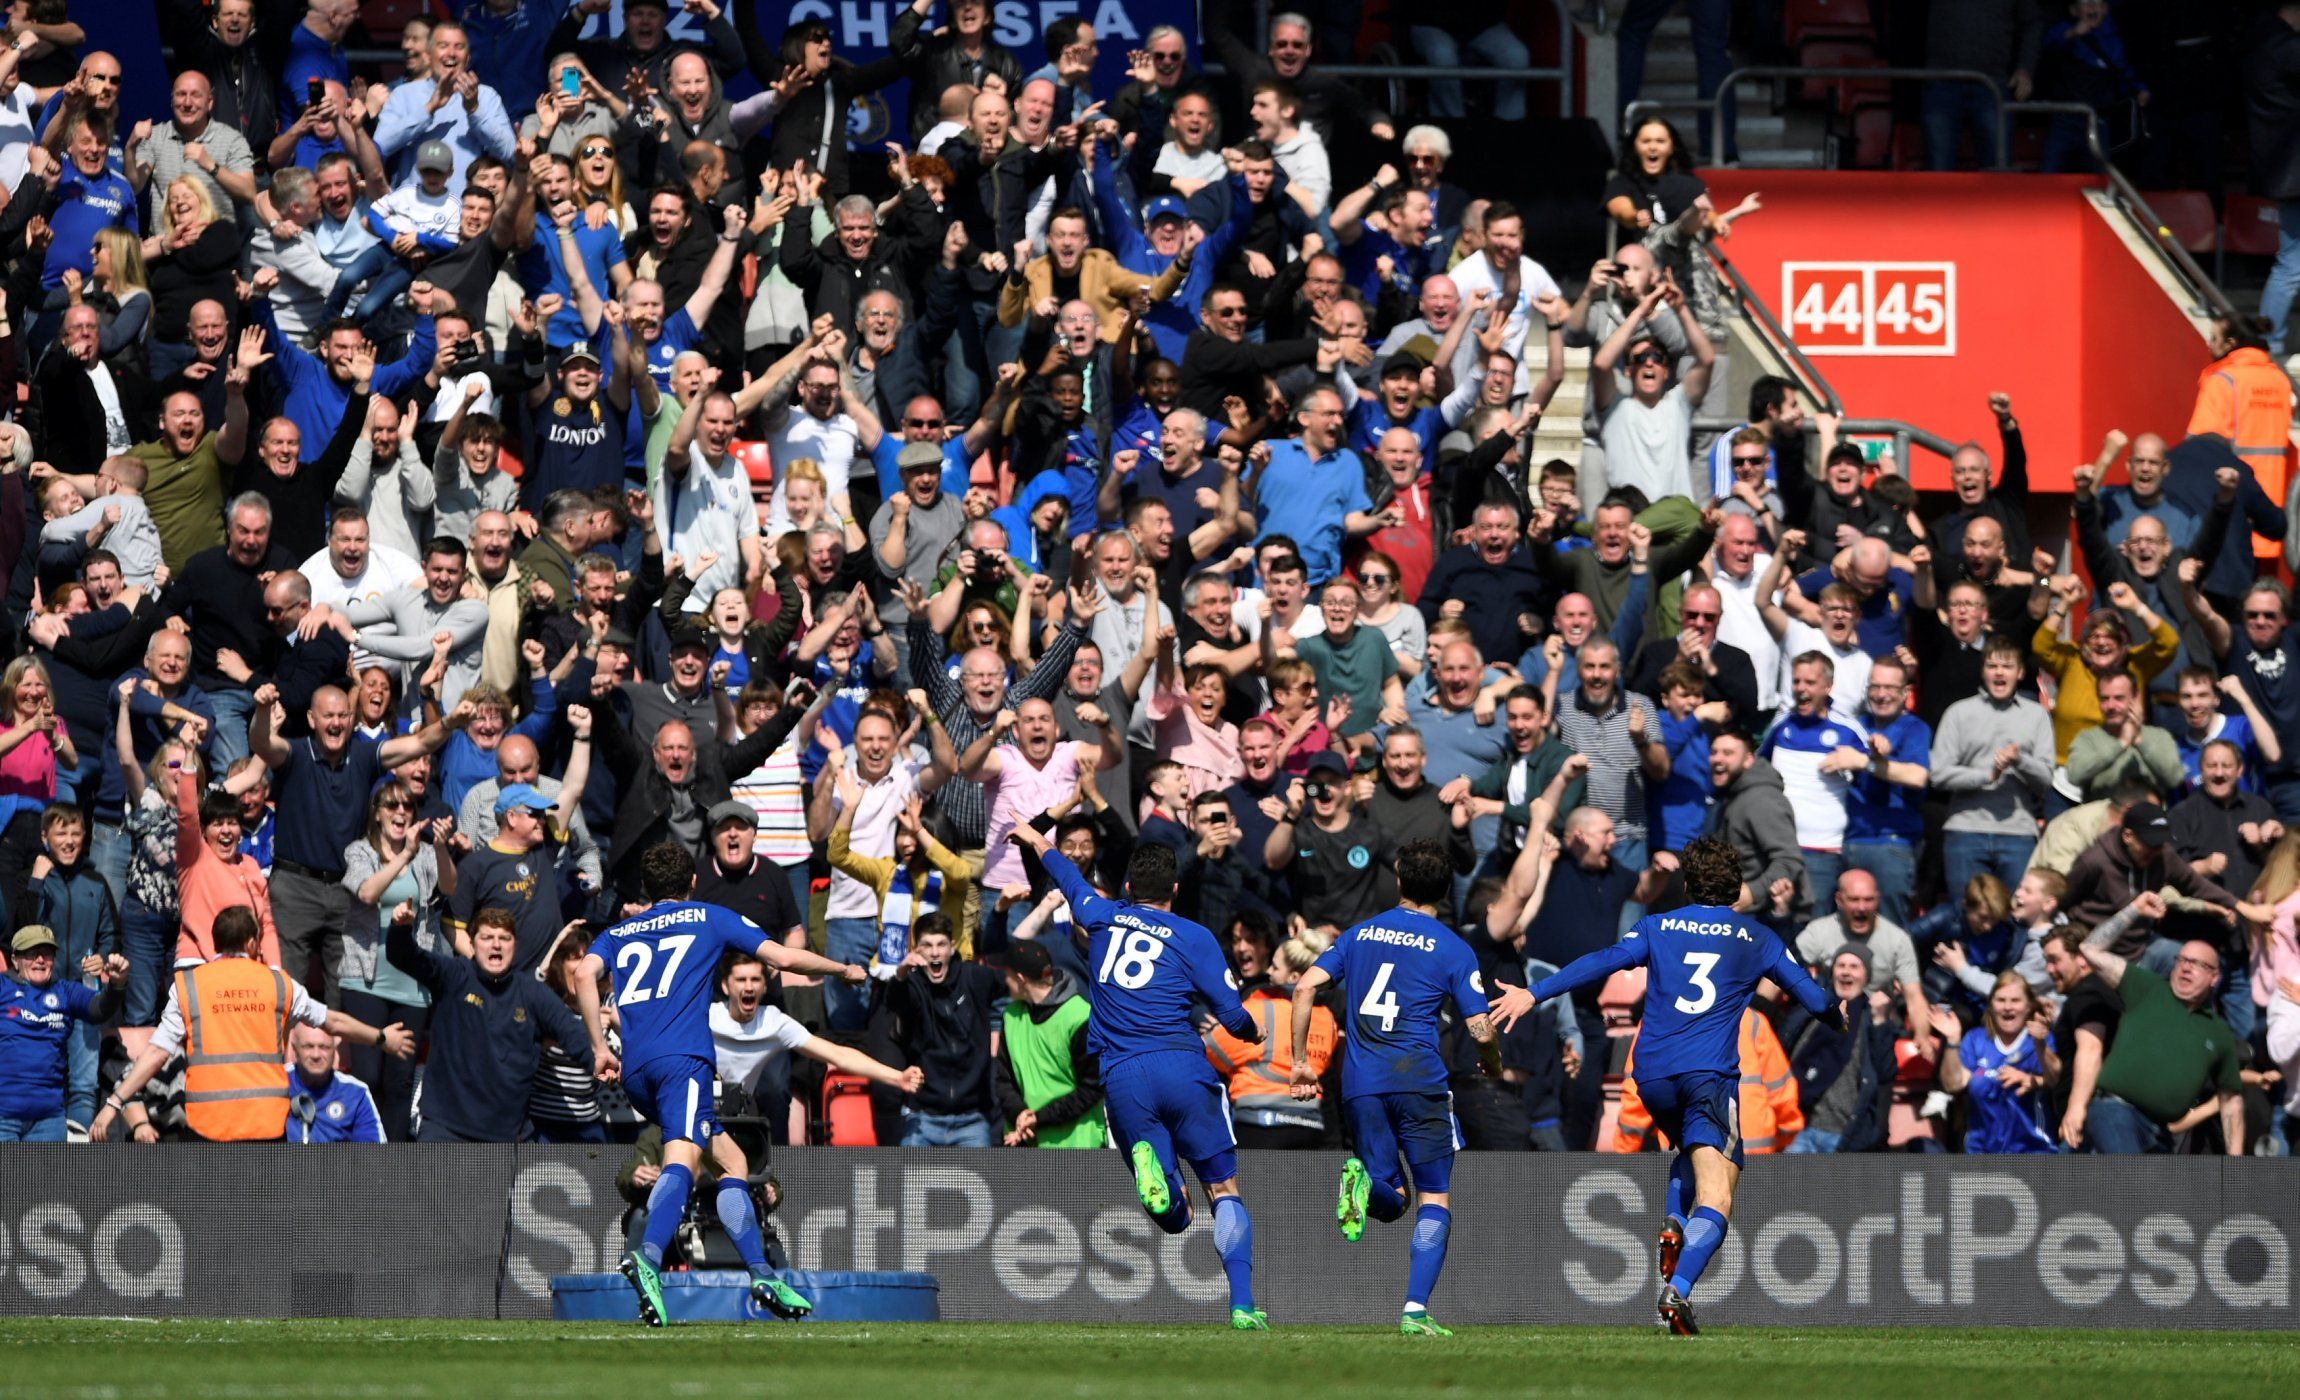 Chelsea fans celebrate against Southampton